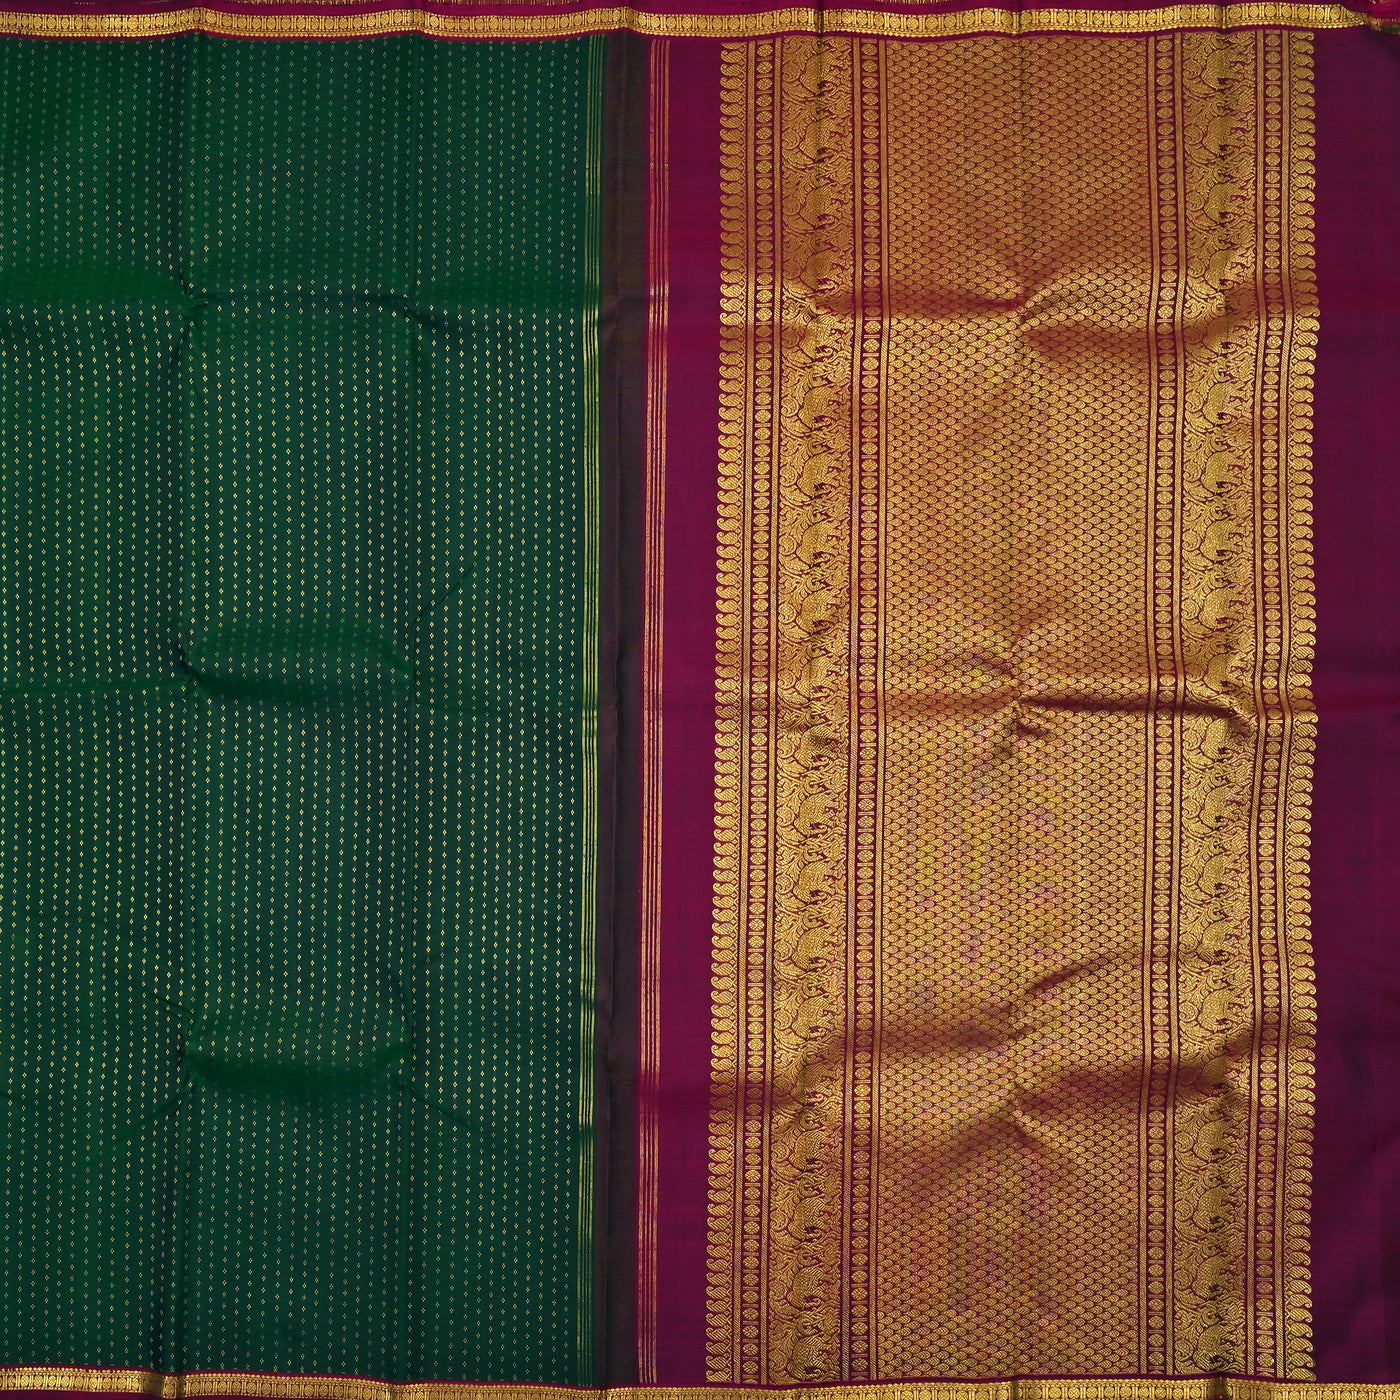 Dark Green Kanchipuram Silk Saree with Kuligai Butta Design